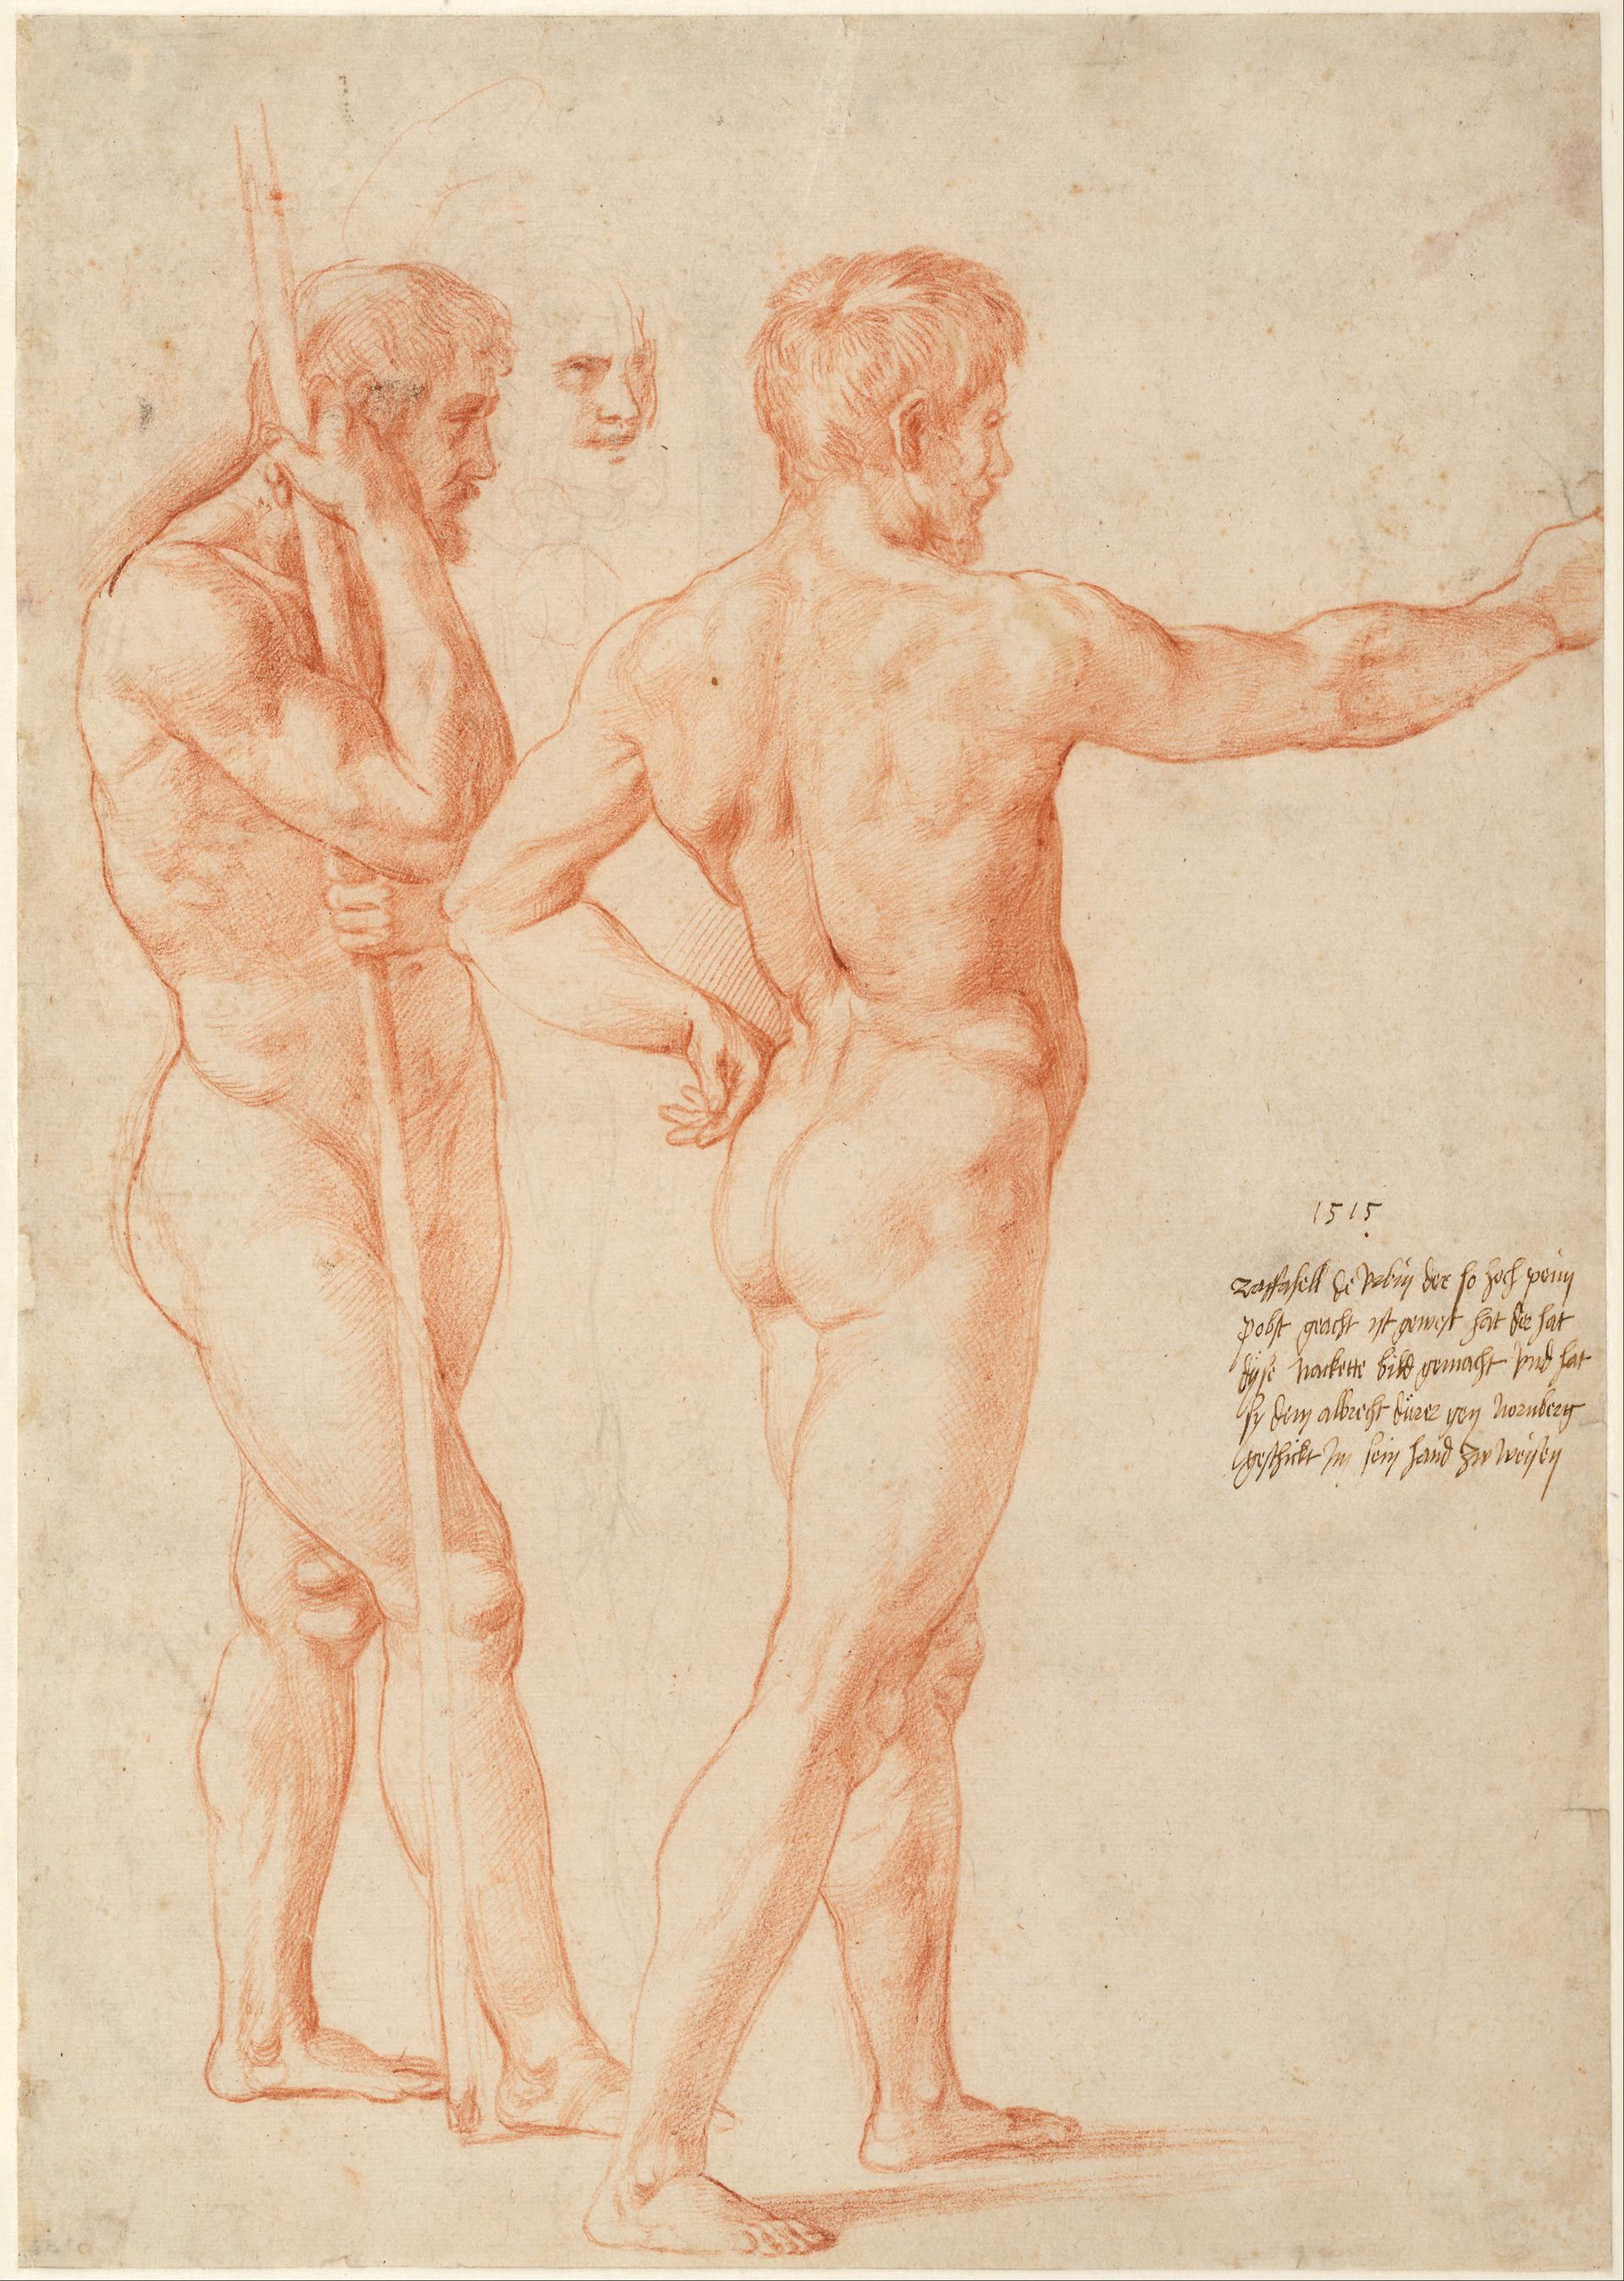 0082_拉斐尔_Raphael 1483–1520-Nude Studies 1515_2803x3937PX_TIF_97DPI_32_0